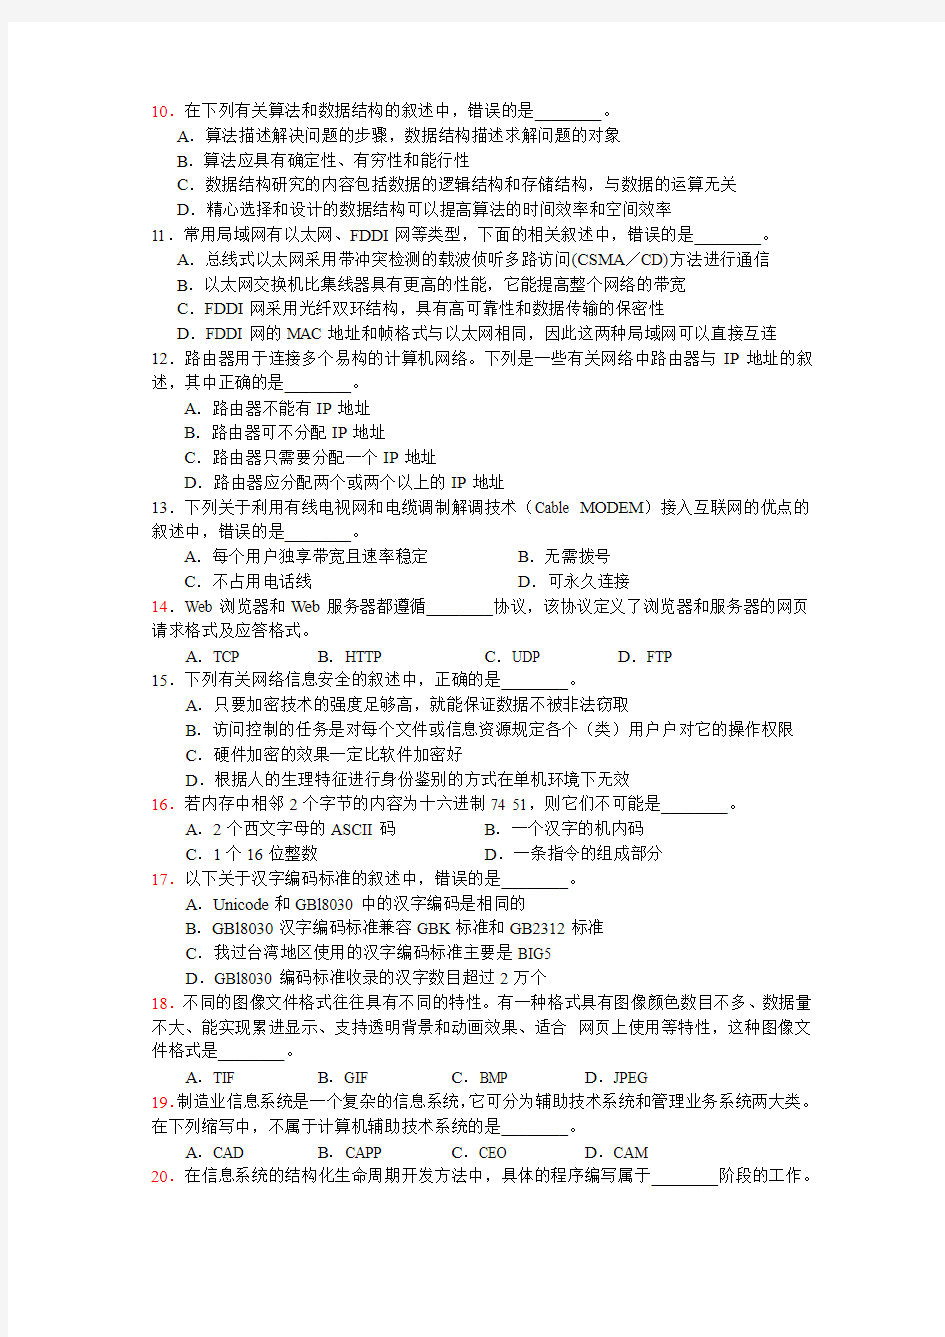 江苏省计算机二级2008年(秋)笔试试卷及答案